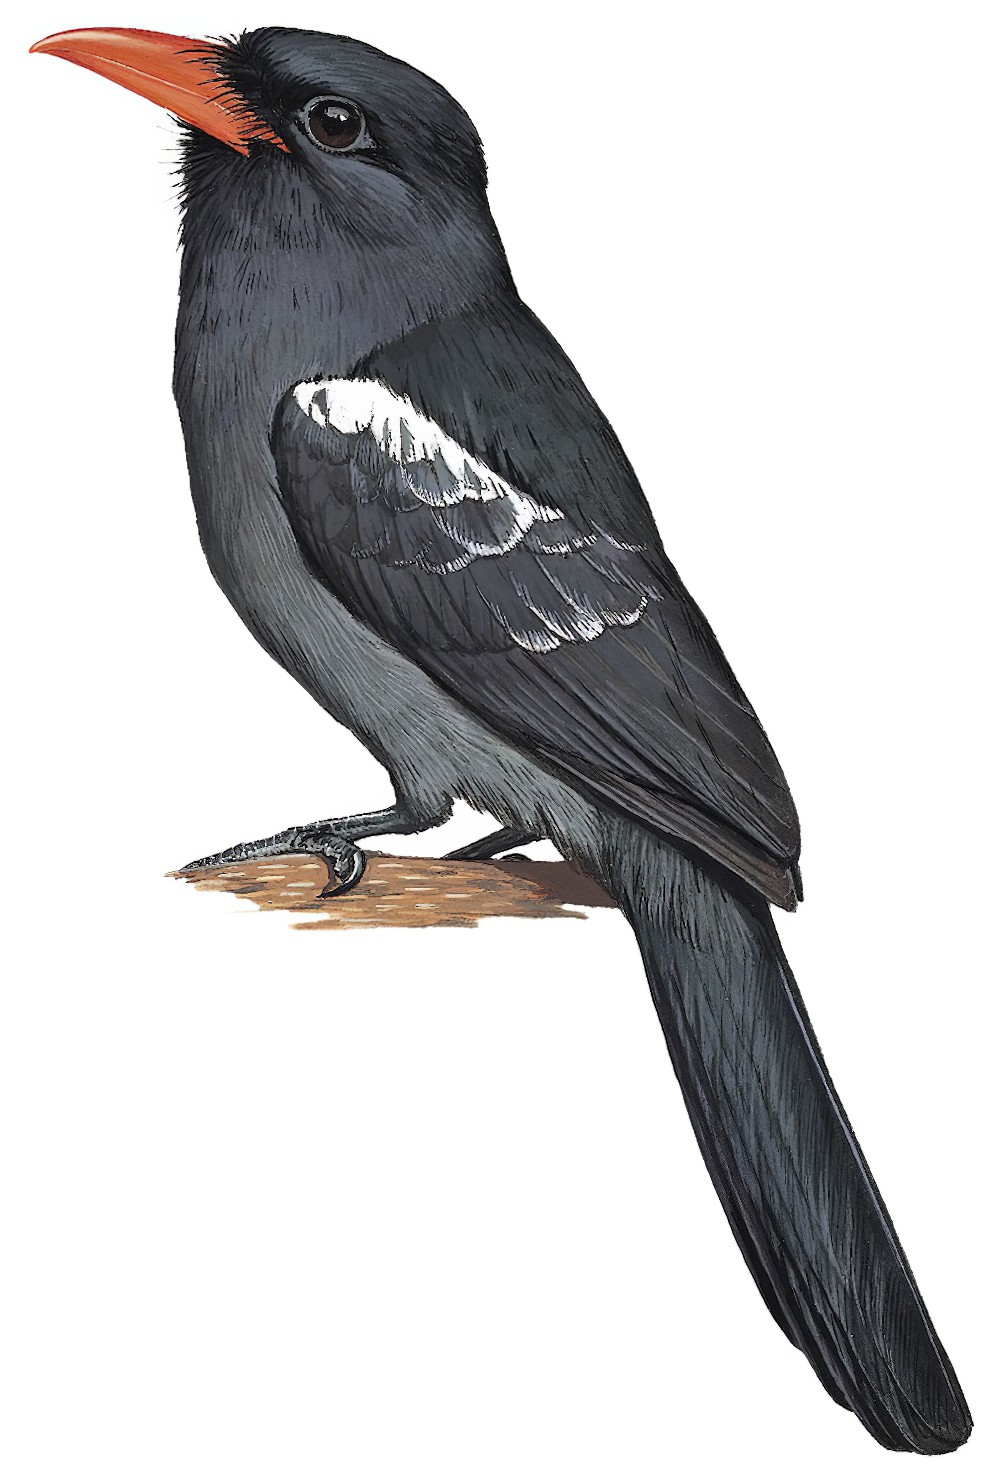 Black Nunbird / Monasa atra